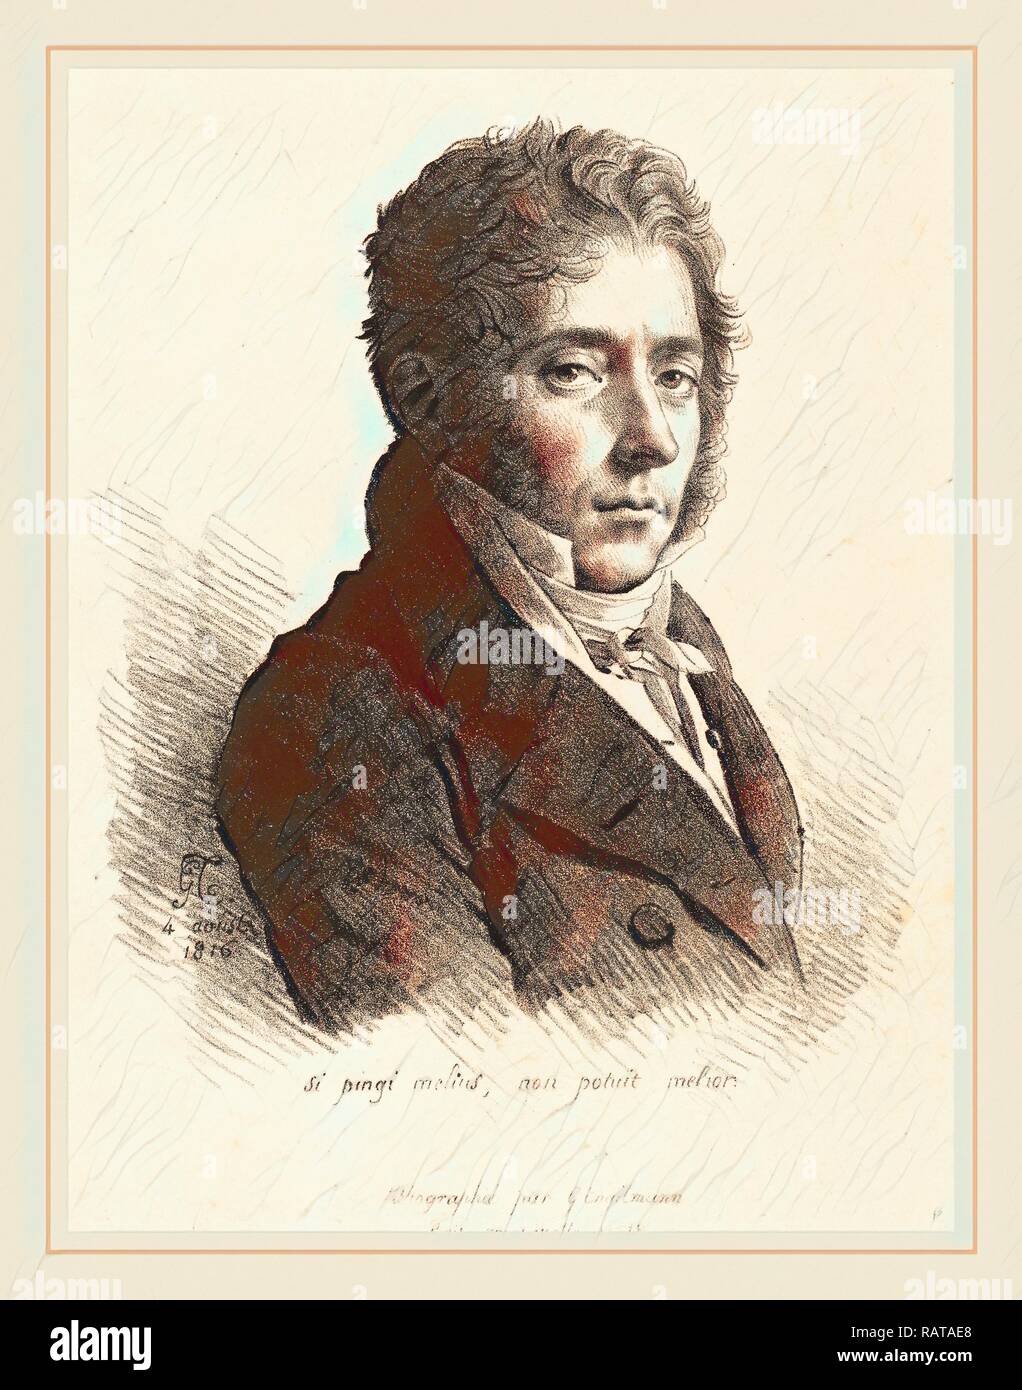 Anne-Louis Girodet de Roussy-Trioson (French, 1767-1824), Coupin de La Couperie, 1816, lithograph. Reimagined Stock Photo